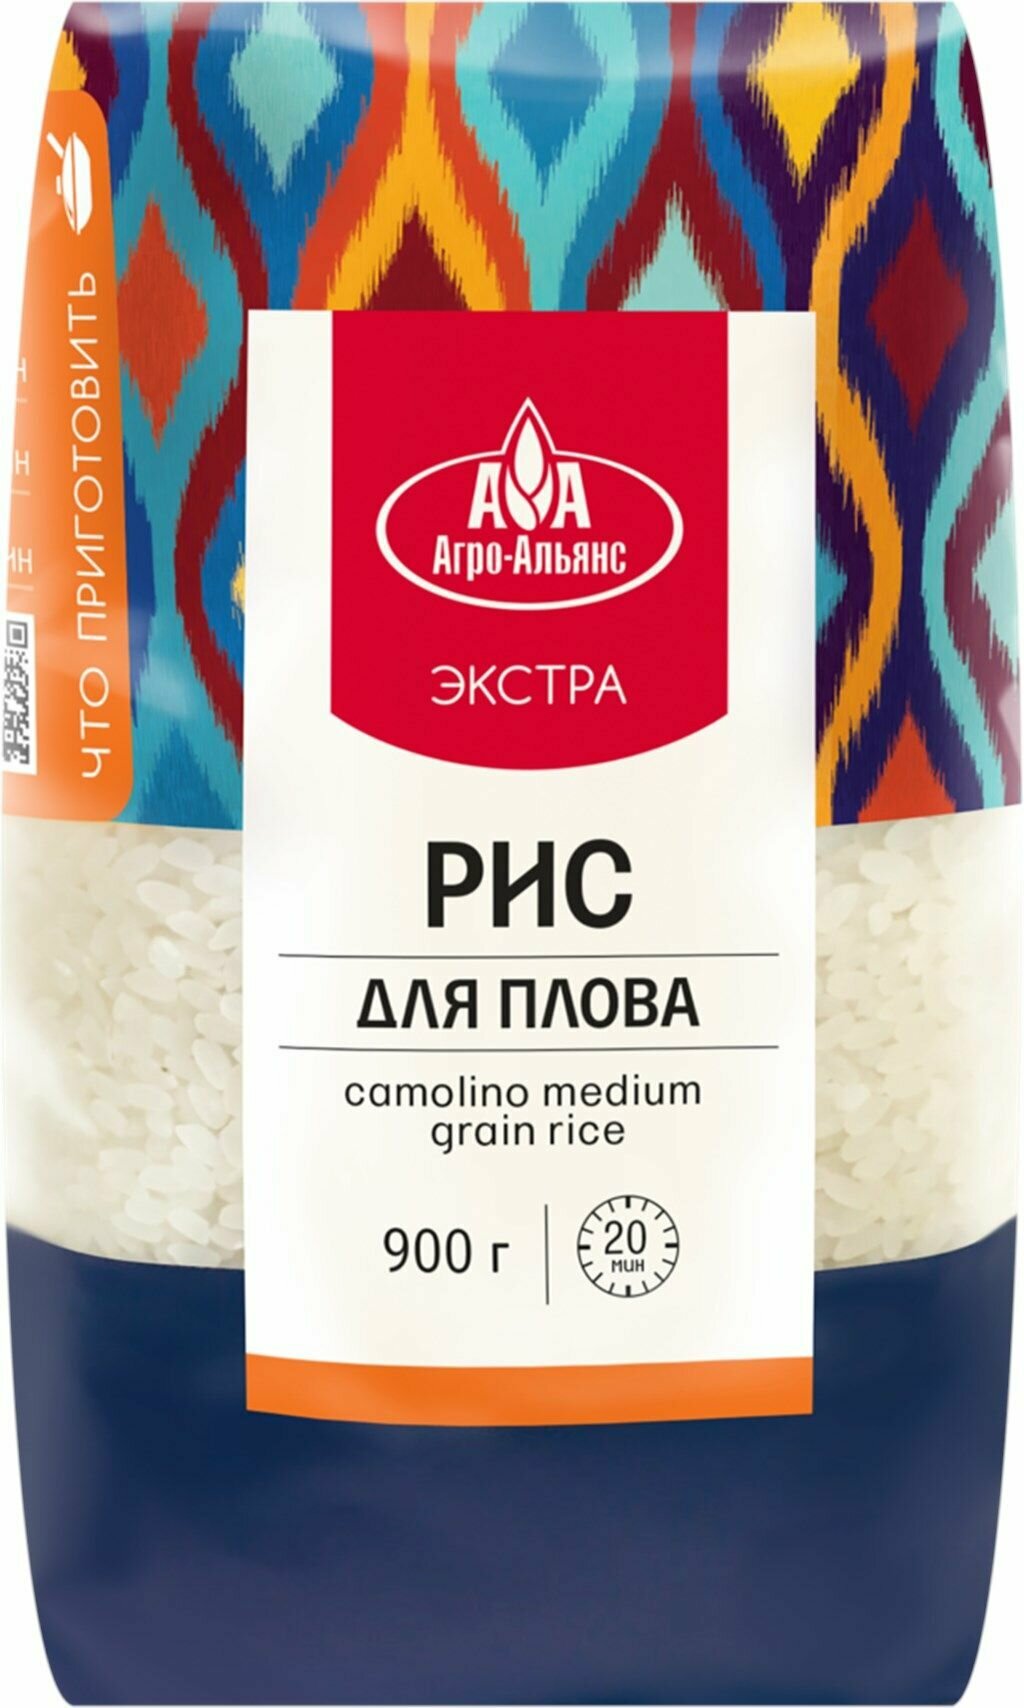 Рис для плова агро-альянс Экстра, 900 г - 5 шт.